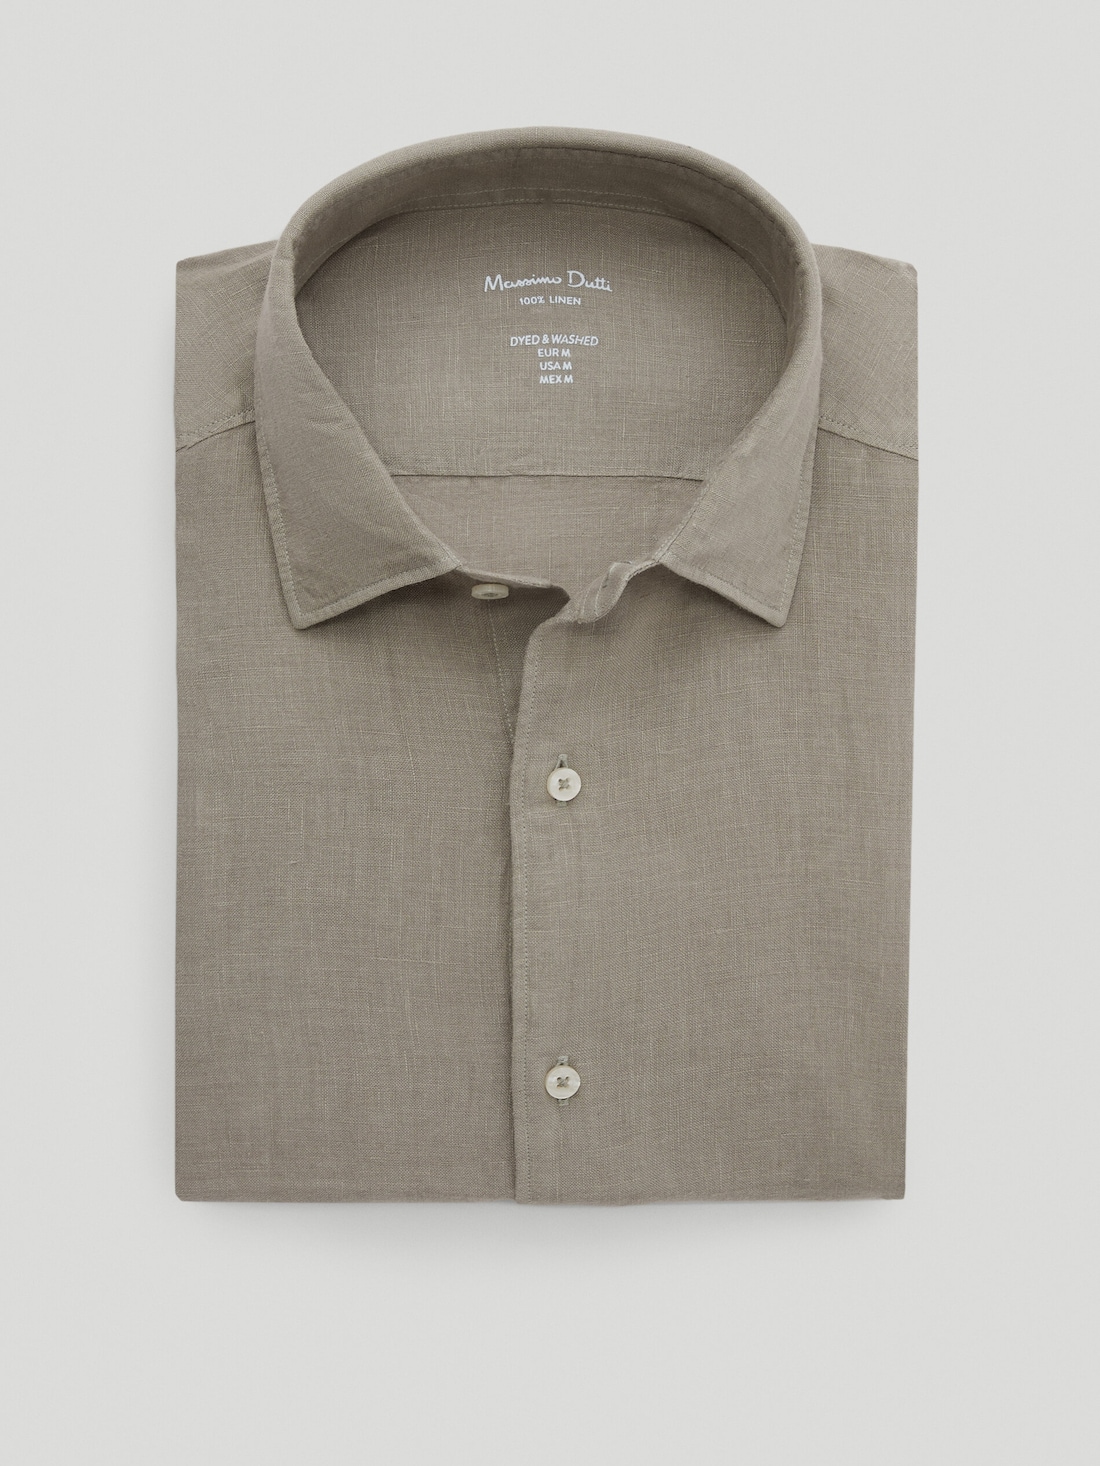 КРОТОВО-КОРИЧНЕВЫЙ Рубашка облегающего кроя из 100% крашеного льна Massimo Dutti